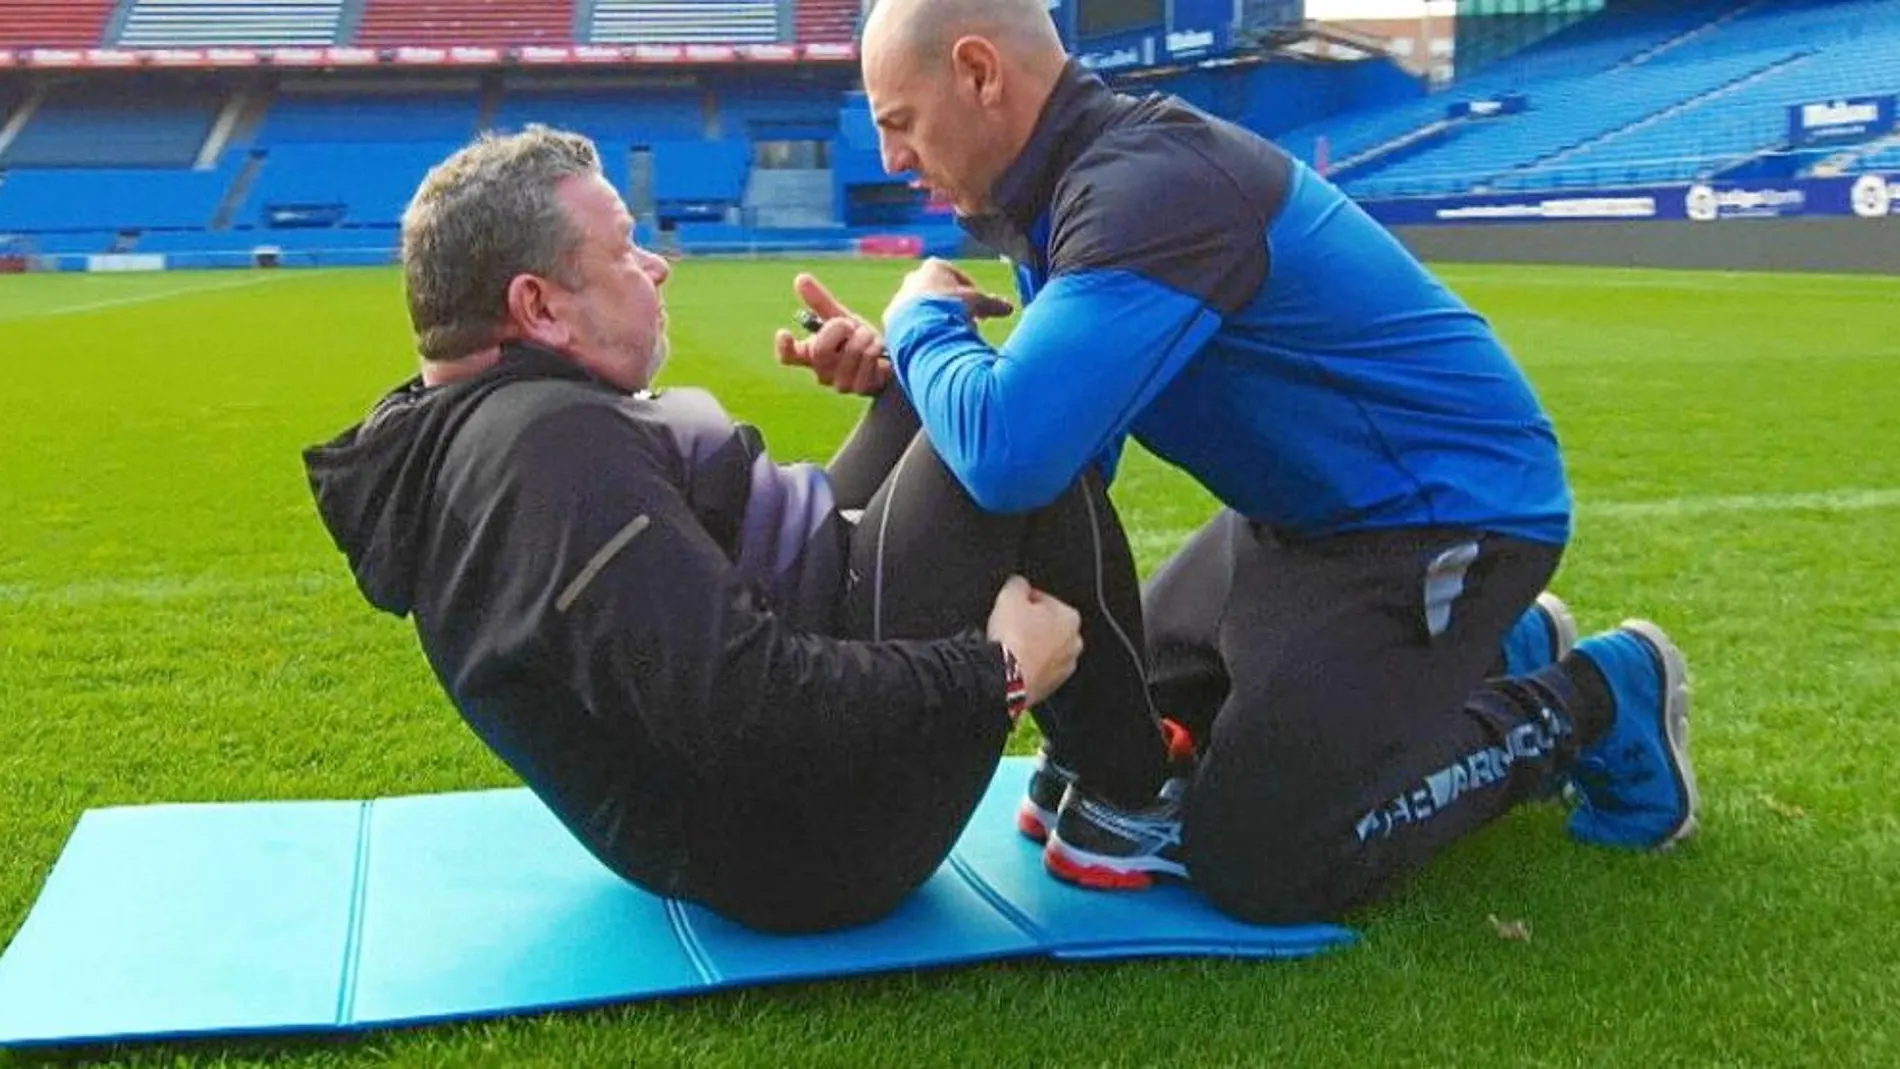 Alberto Chicote y su entrenador Martín Giacchetta realizando una rutina de ejercicios